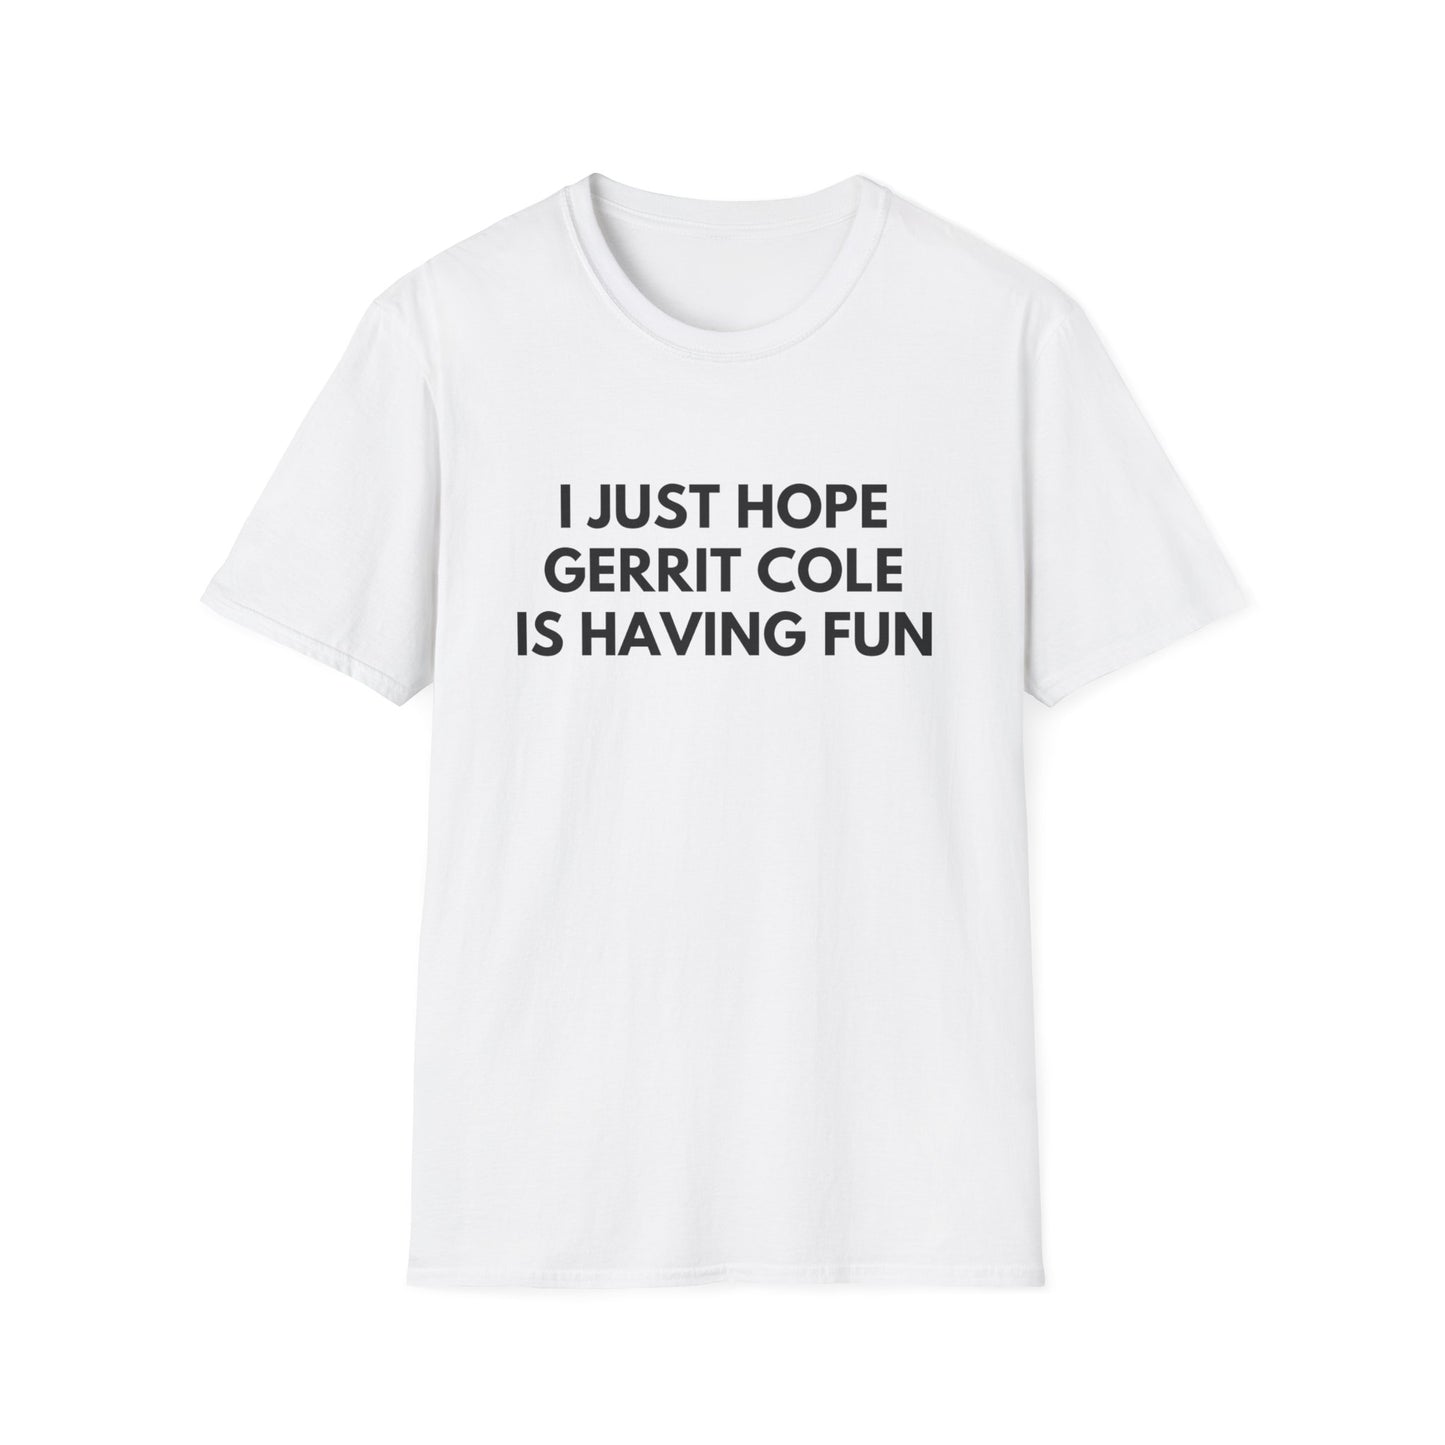 Gerrit Cole Having Fun - Unisex T-shirt